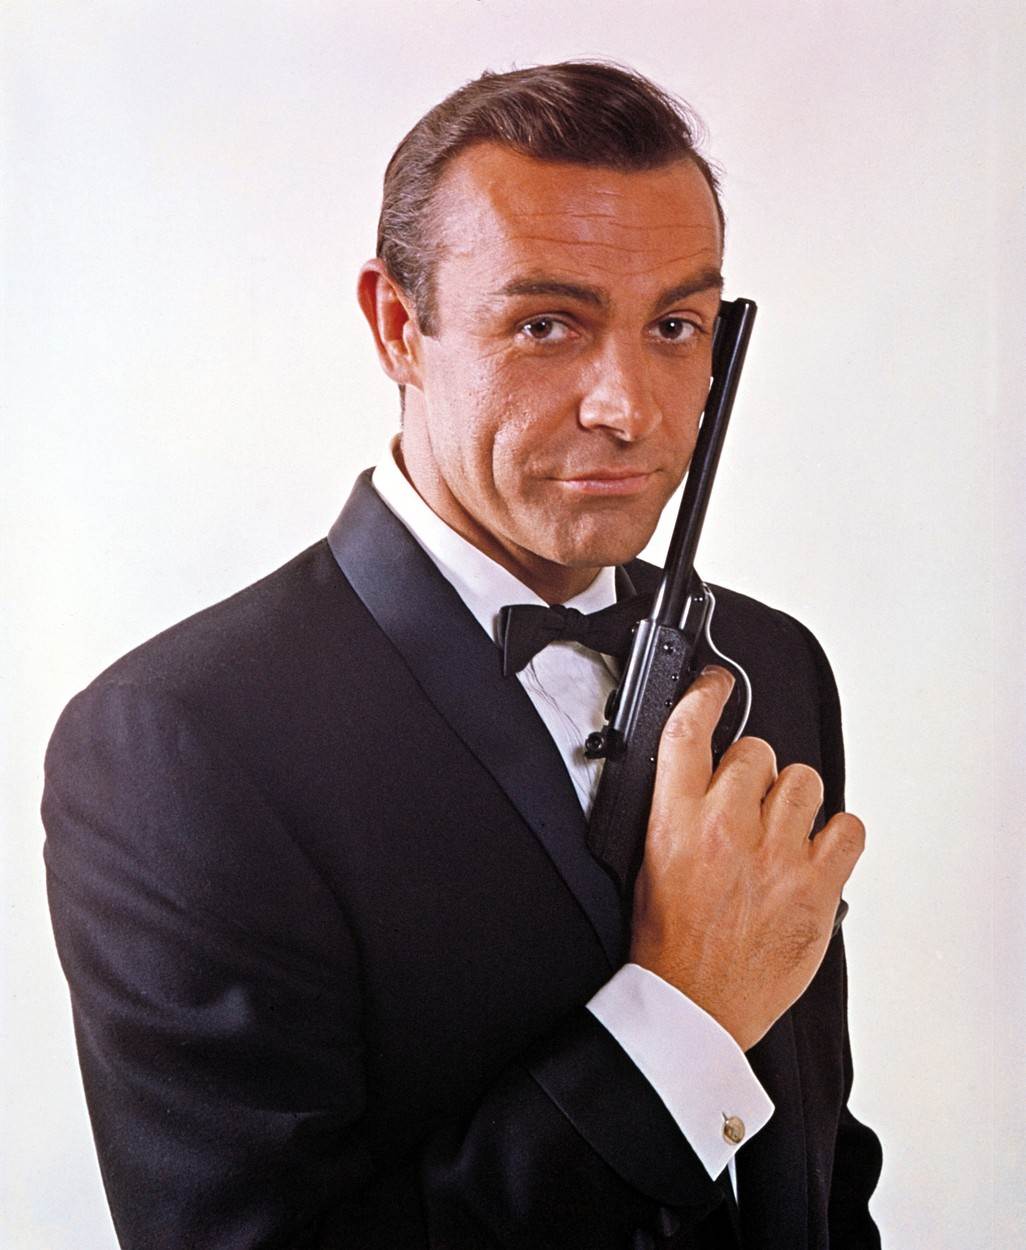 Sean Connery do danas ostaje omiljeni James Bond